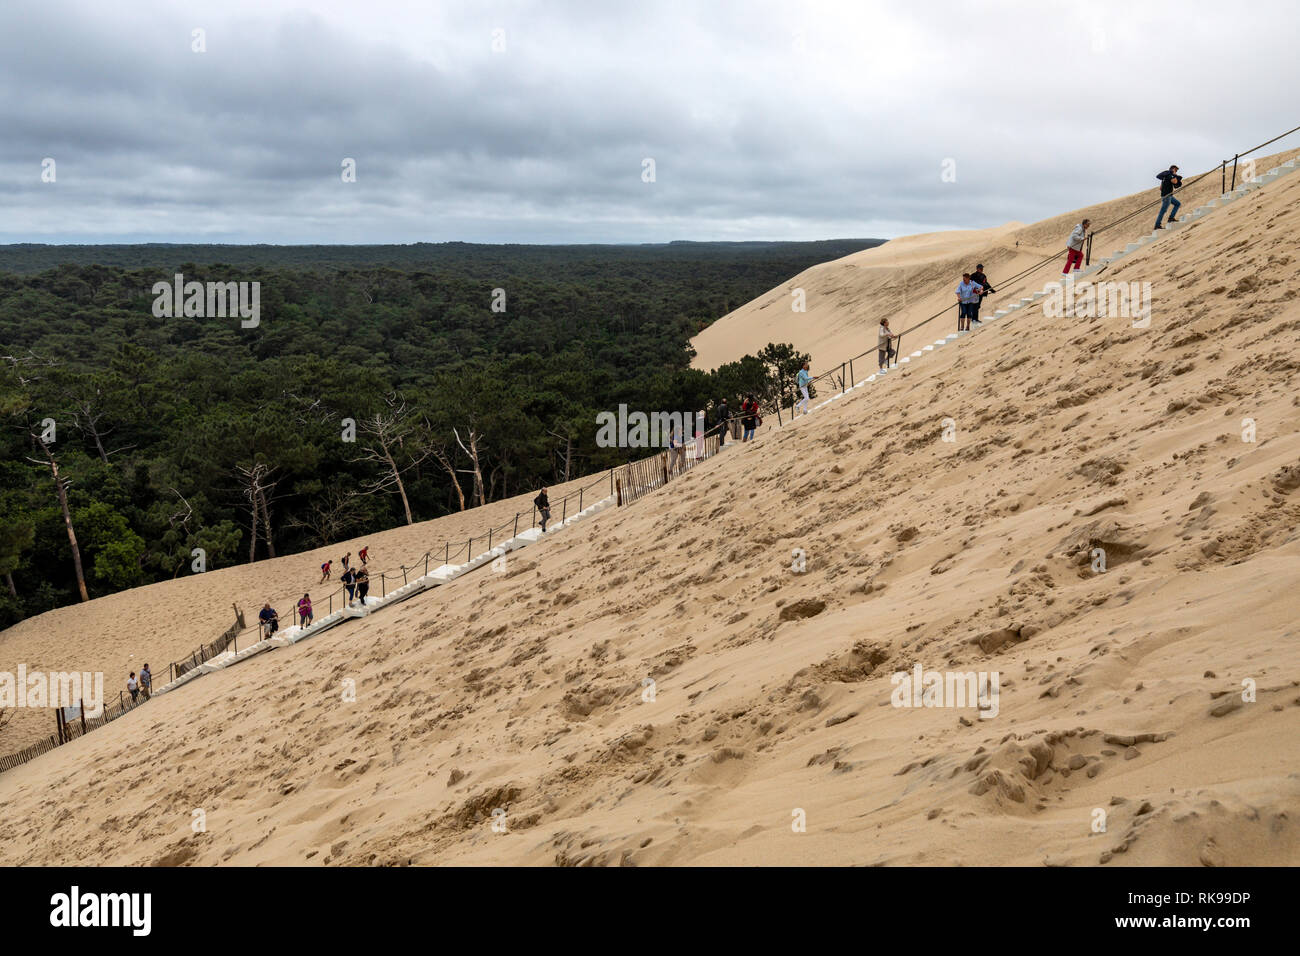 Los turistas subir la duna de Pilat la duna más alta de Europa situado en La Teste-de-Buch en el área de la bahía de Arcachon, a 60 km de Francia bordea Foto de stock